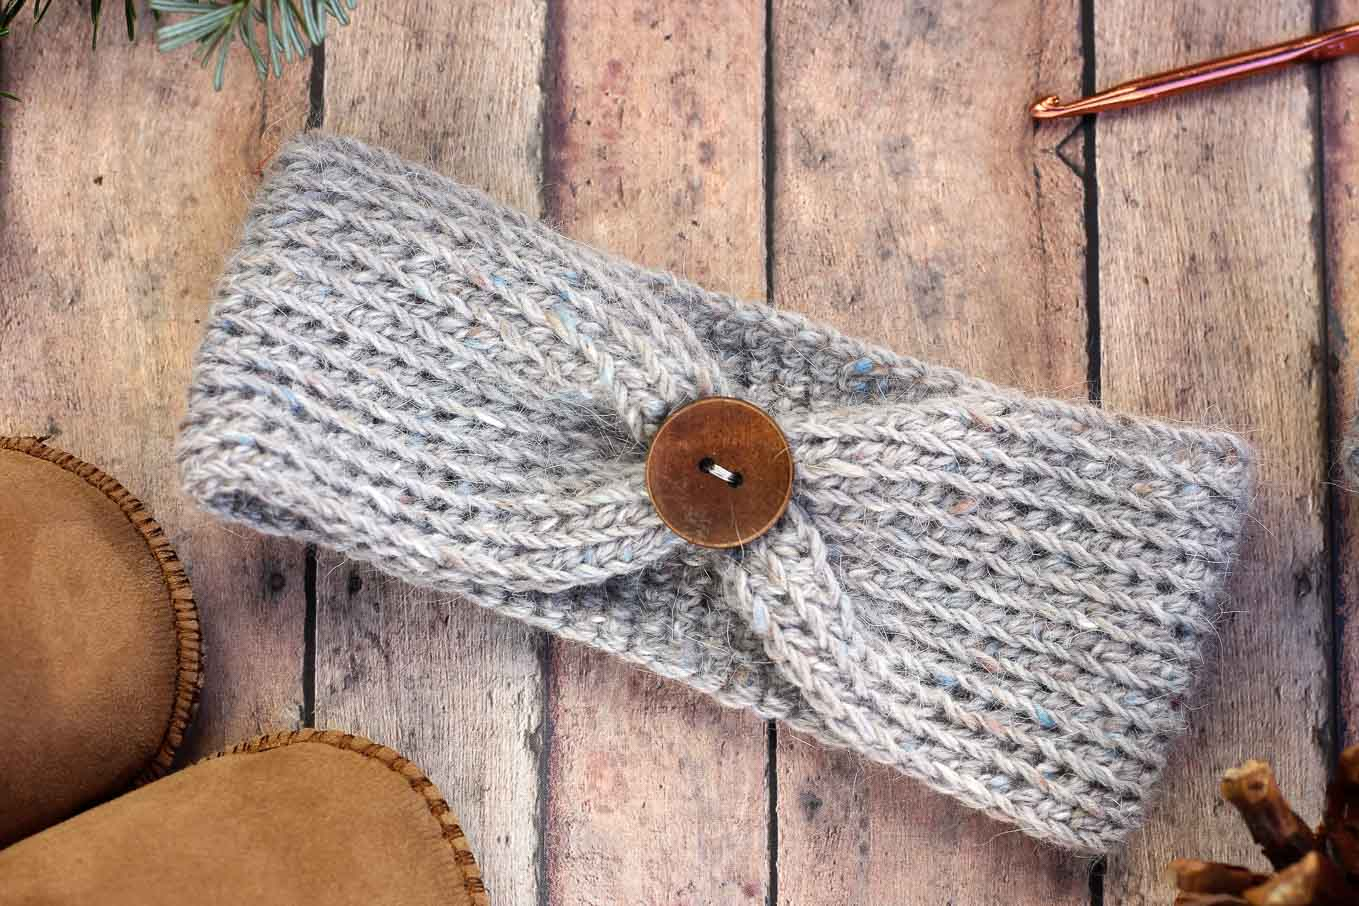 Crochet Headbands Ear Warmers Patterns Free Free Crochet Headband Pattern Ba Adult Sizes